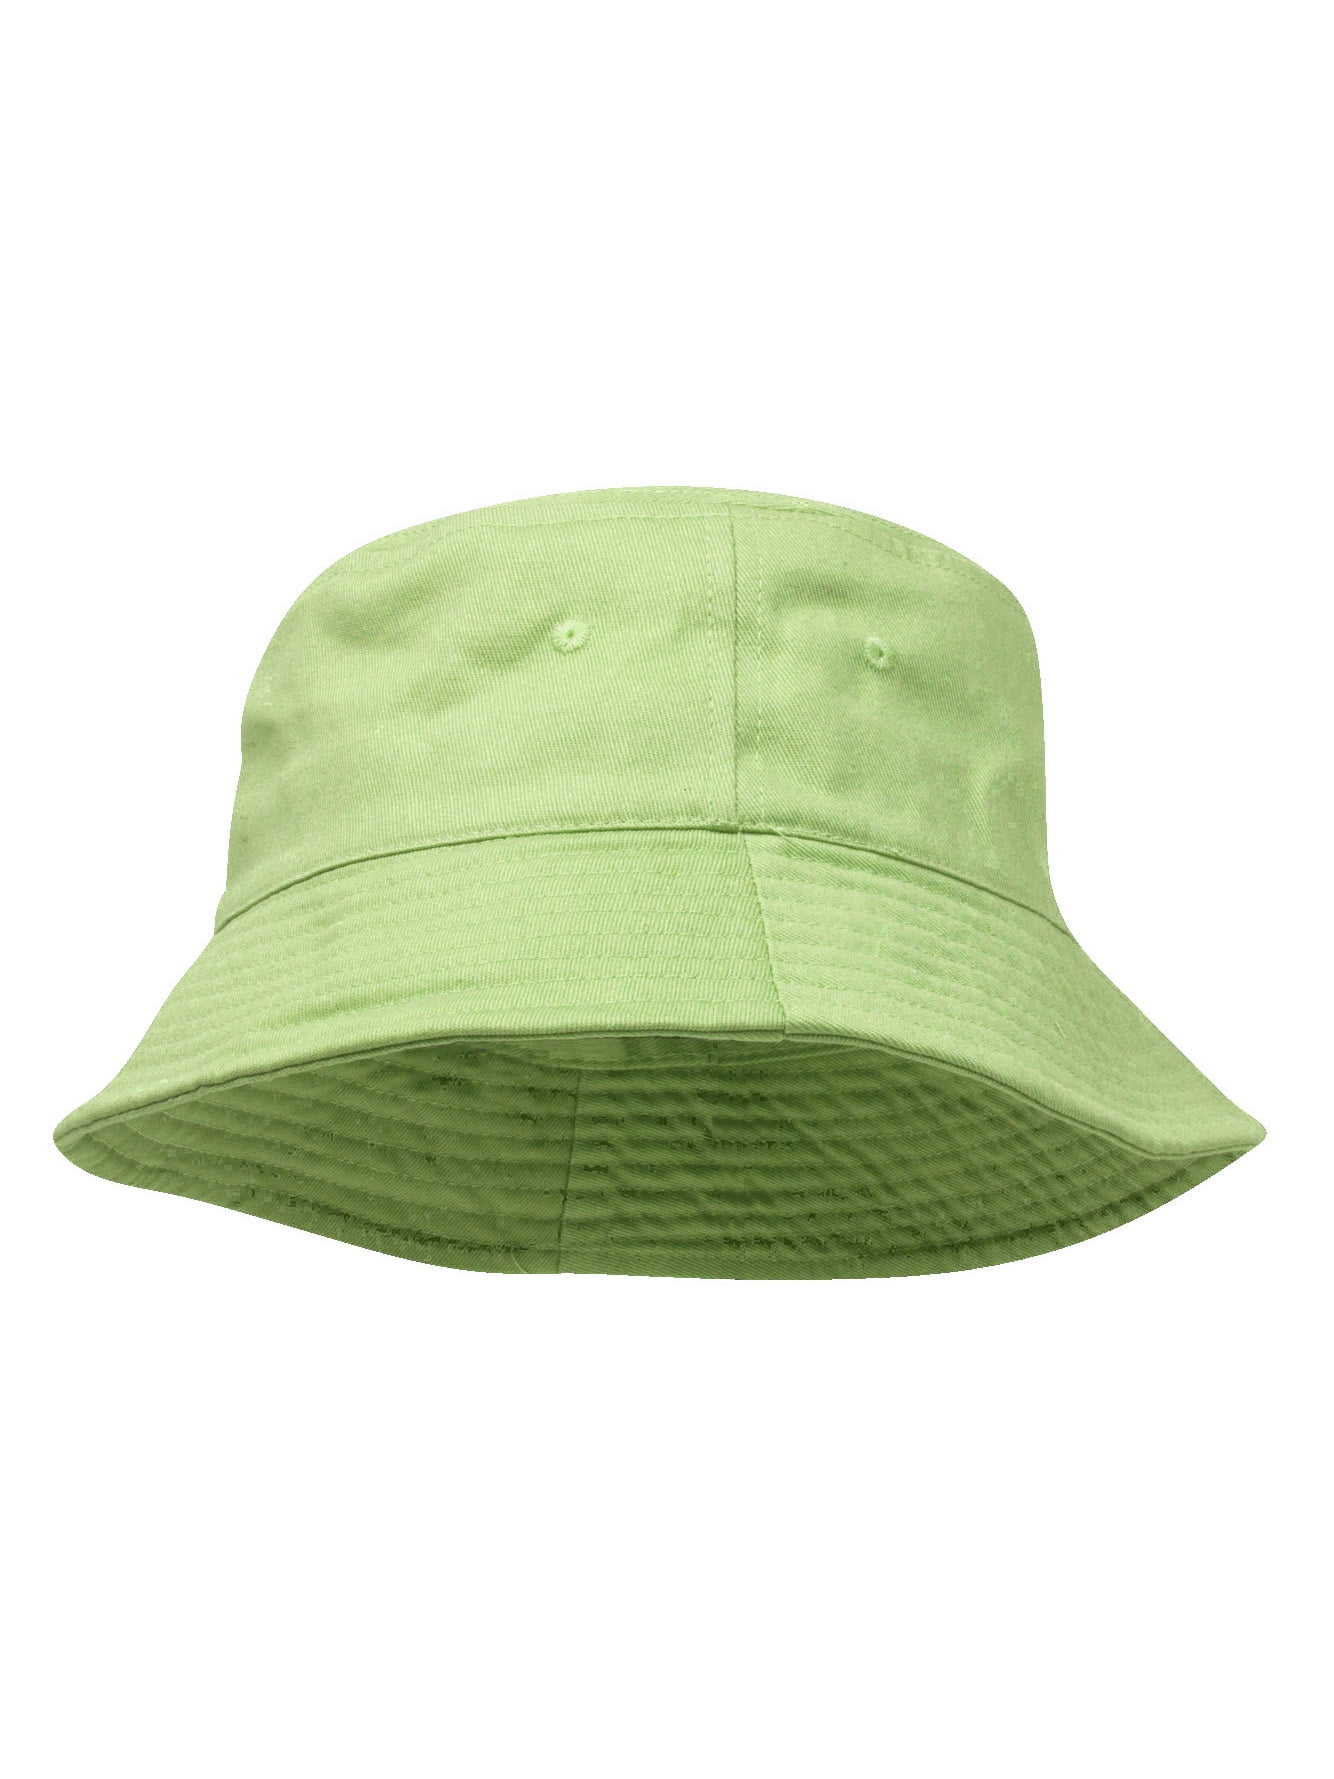 TopHeadwear - TopHeadwear Blank Cotton Bucket Hat - Walmart.com ...